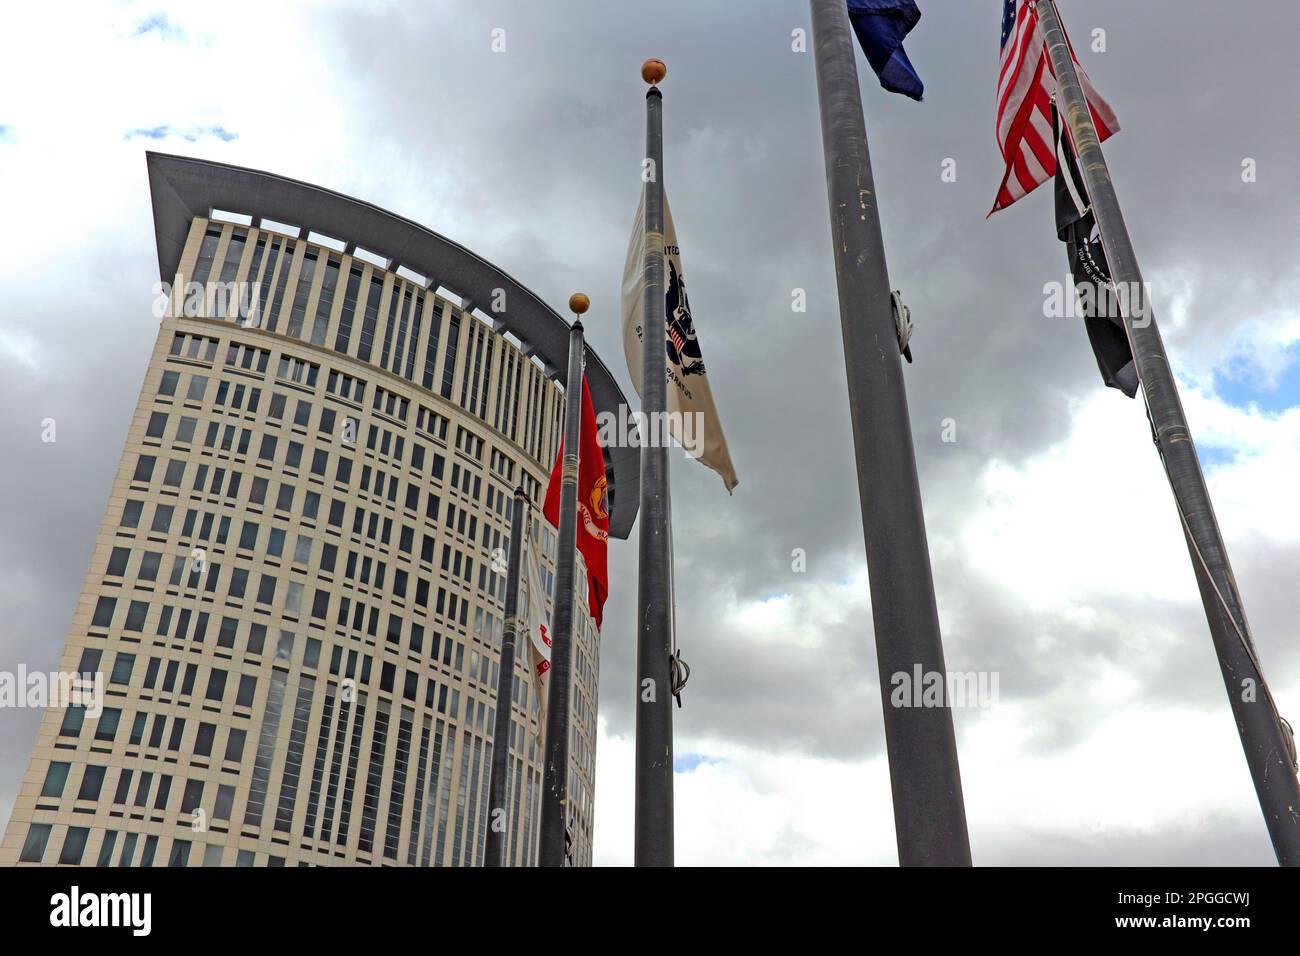 Le nuvole si radunano intorno agli Stati Uniti Carl B. Stokes Il tribunale, sede del 6th° circuito della Corte d'appello degli Stati Uniti, è stato aperto nel 2002 a Cleveland, Ohio, USA. Foto Stock